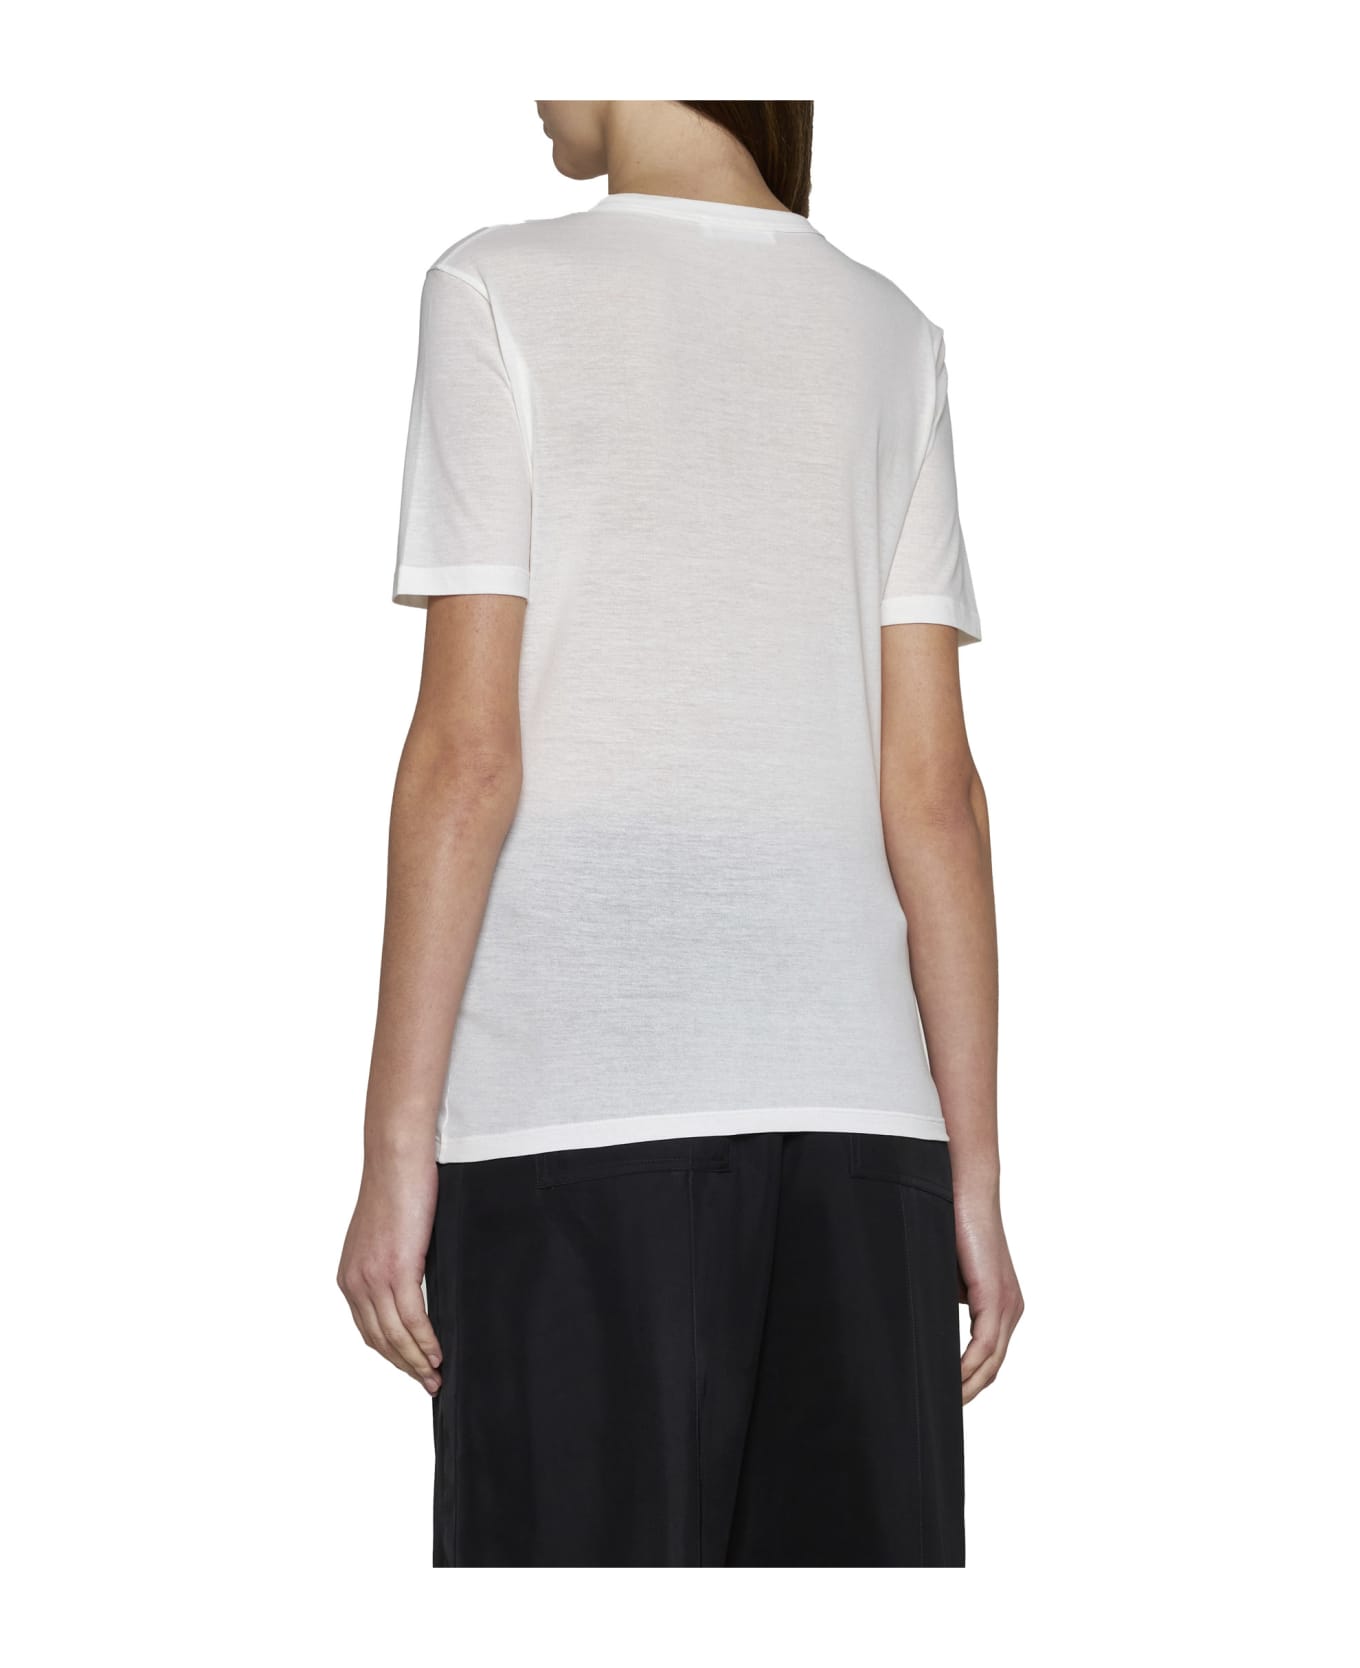 Jil Sander T-Shirt - White